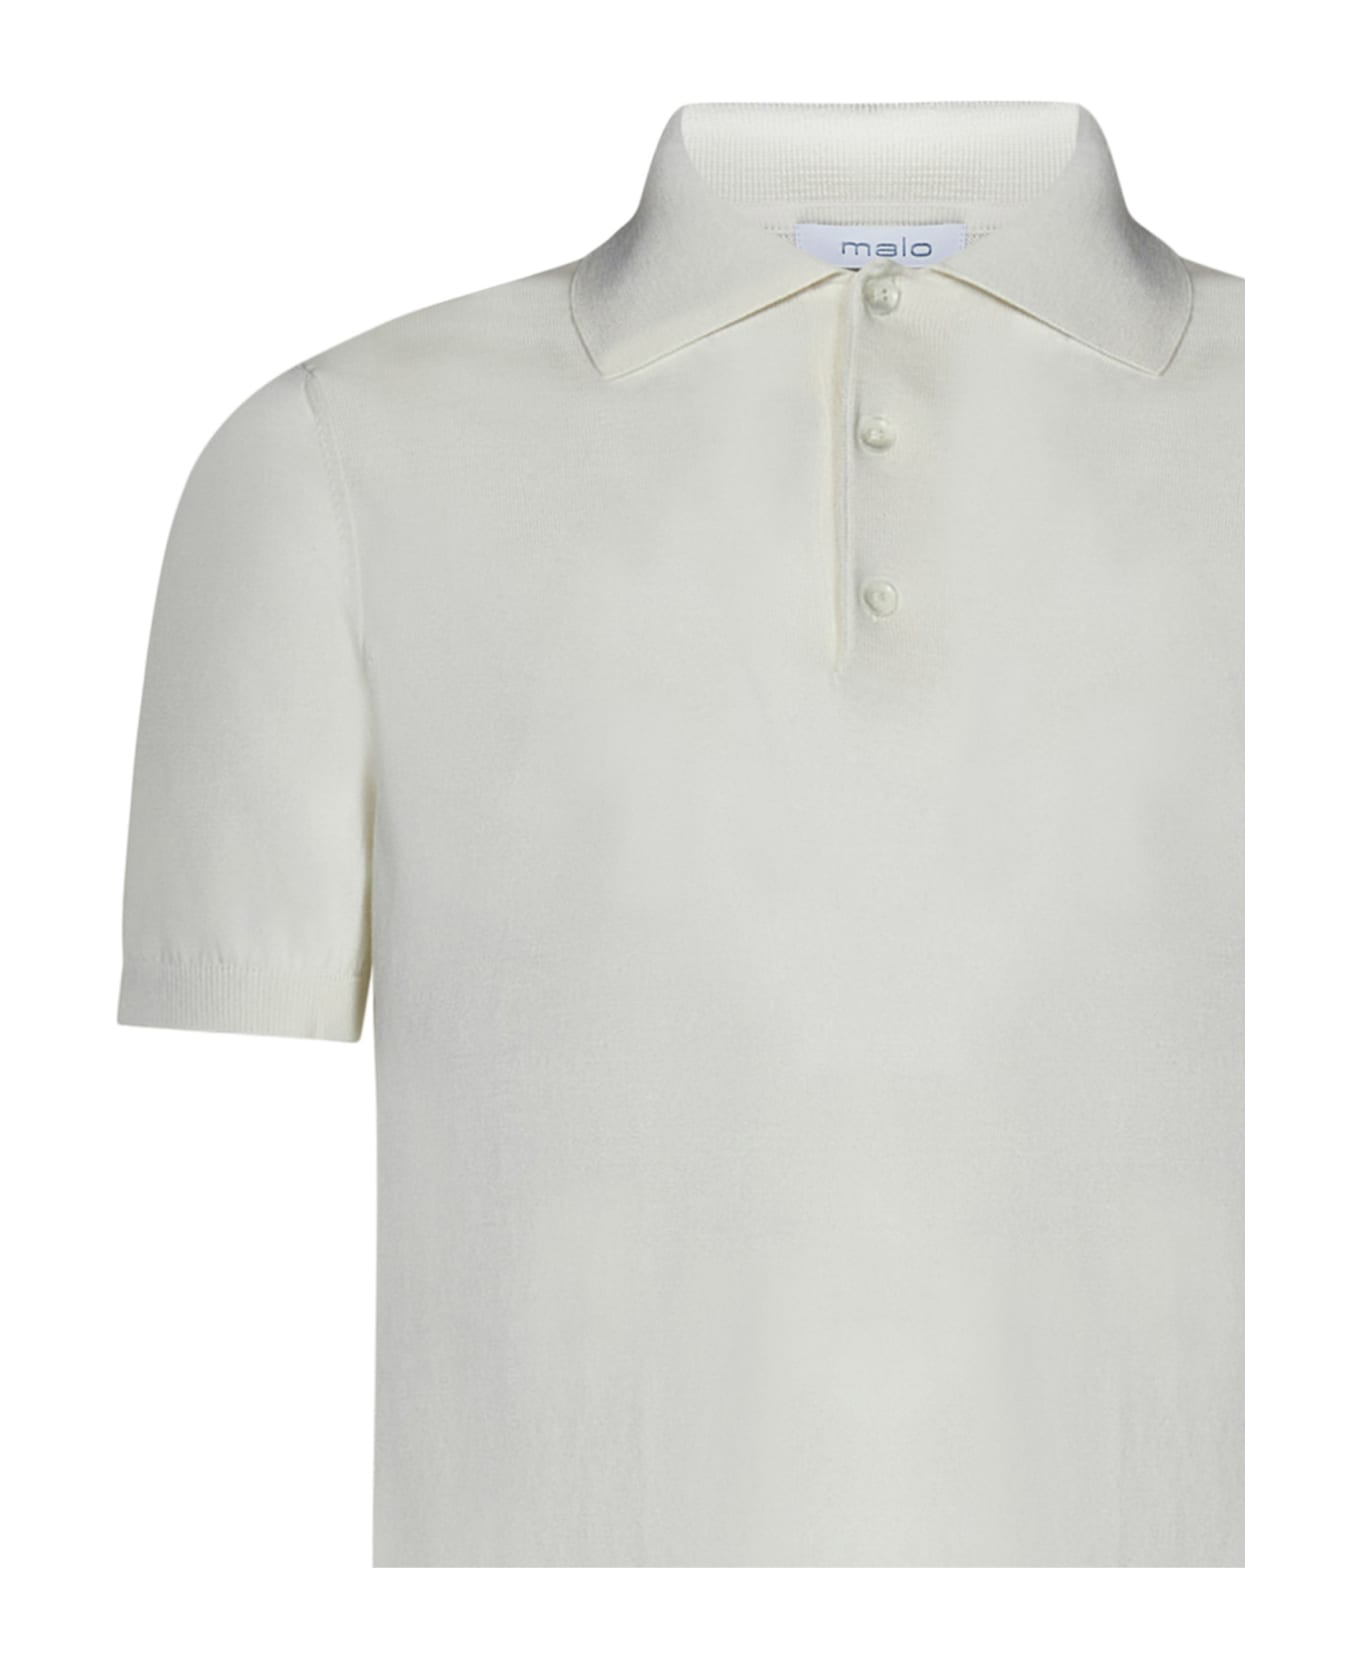 Malo Polo Shirt - White ポロシャツ